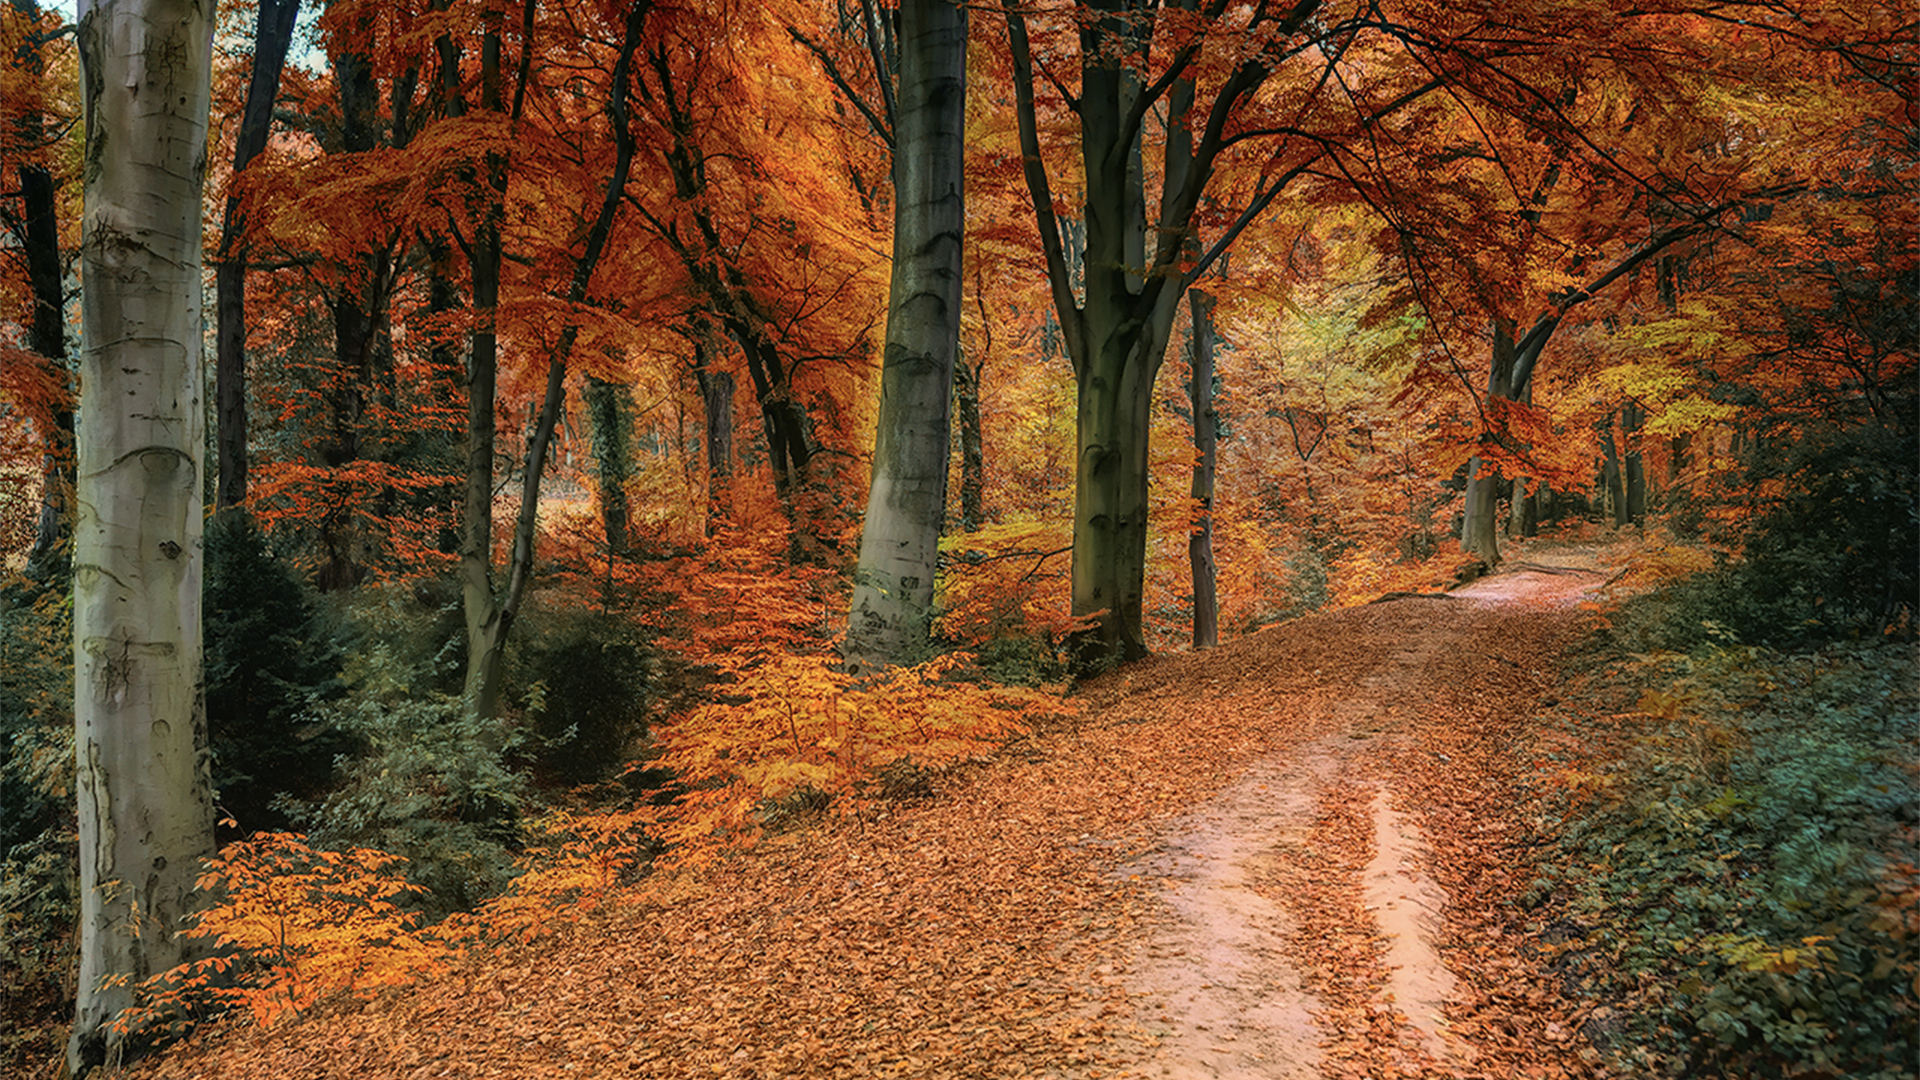 Trail through an autumnal wood